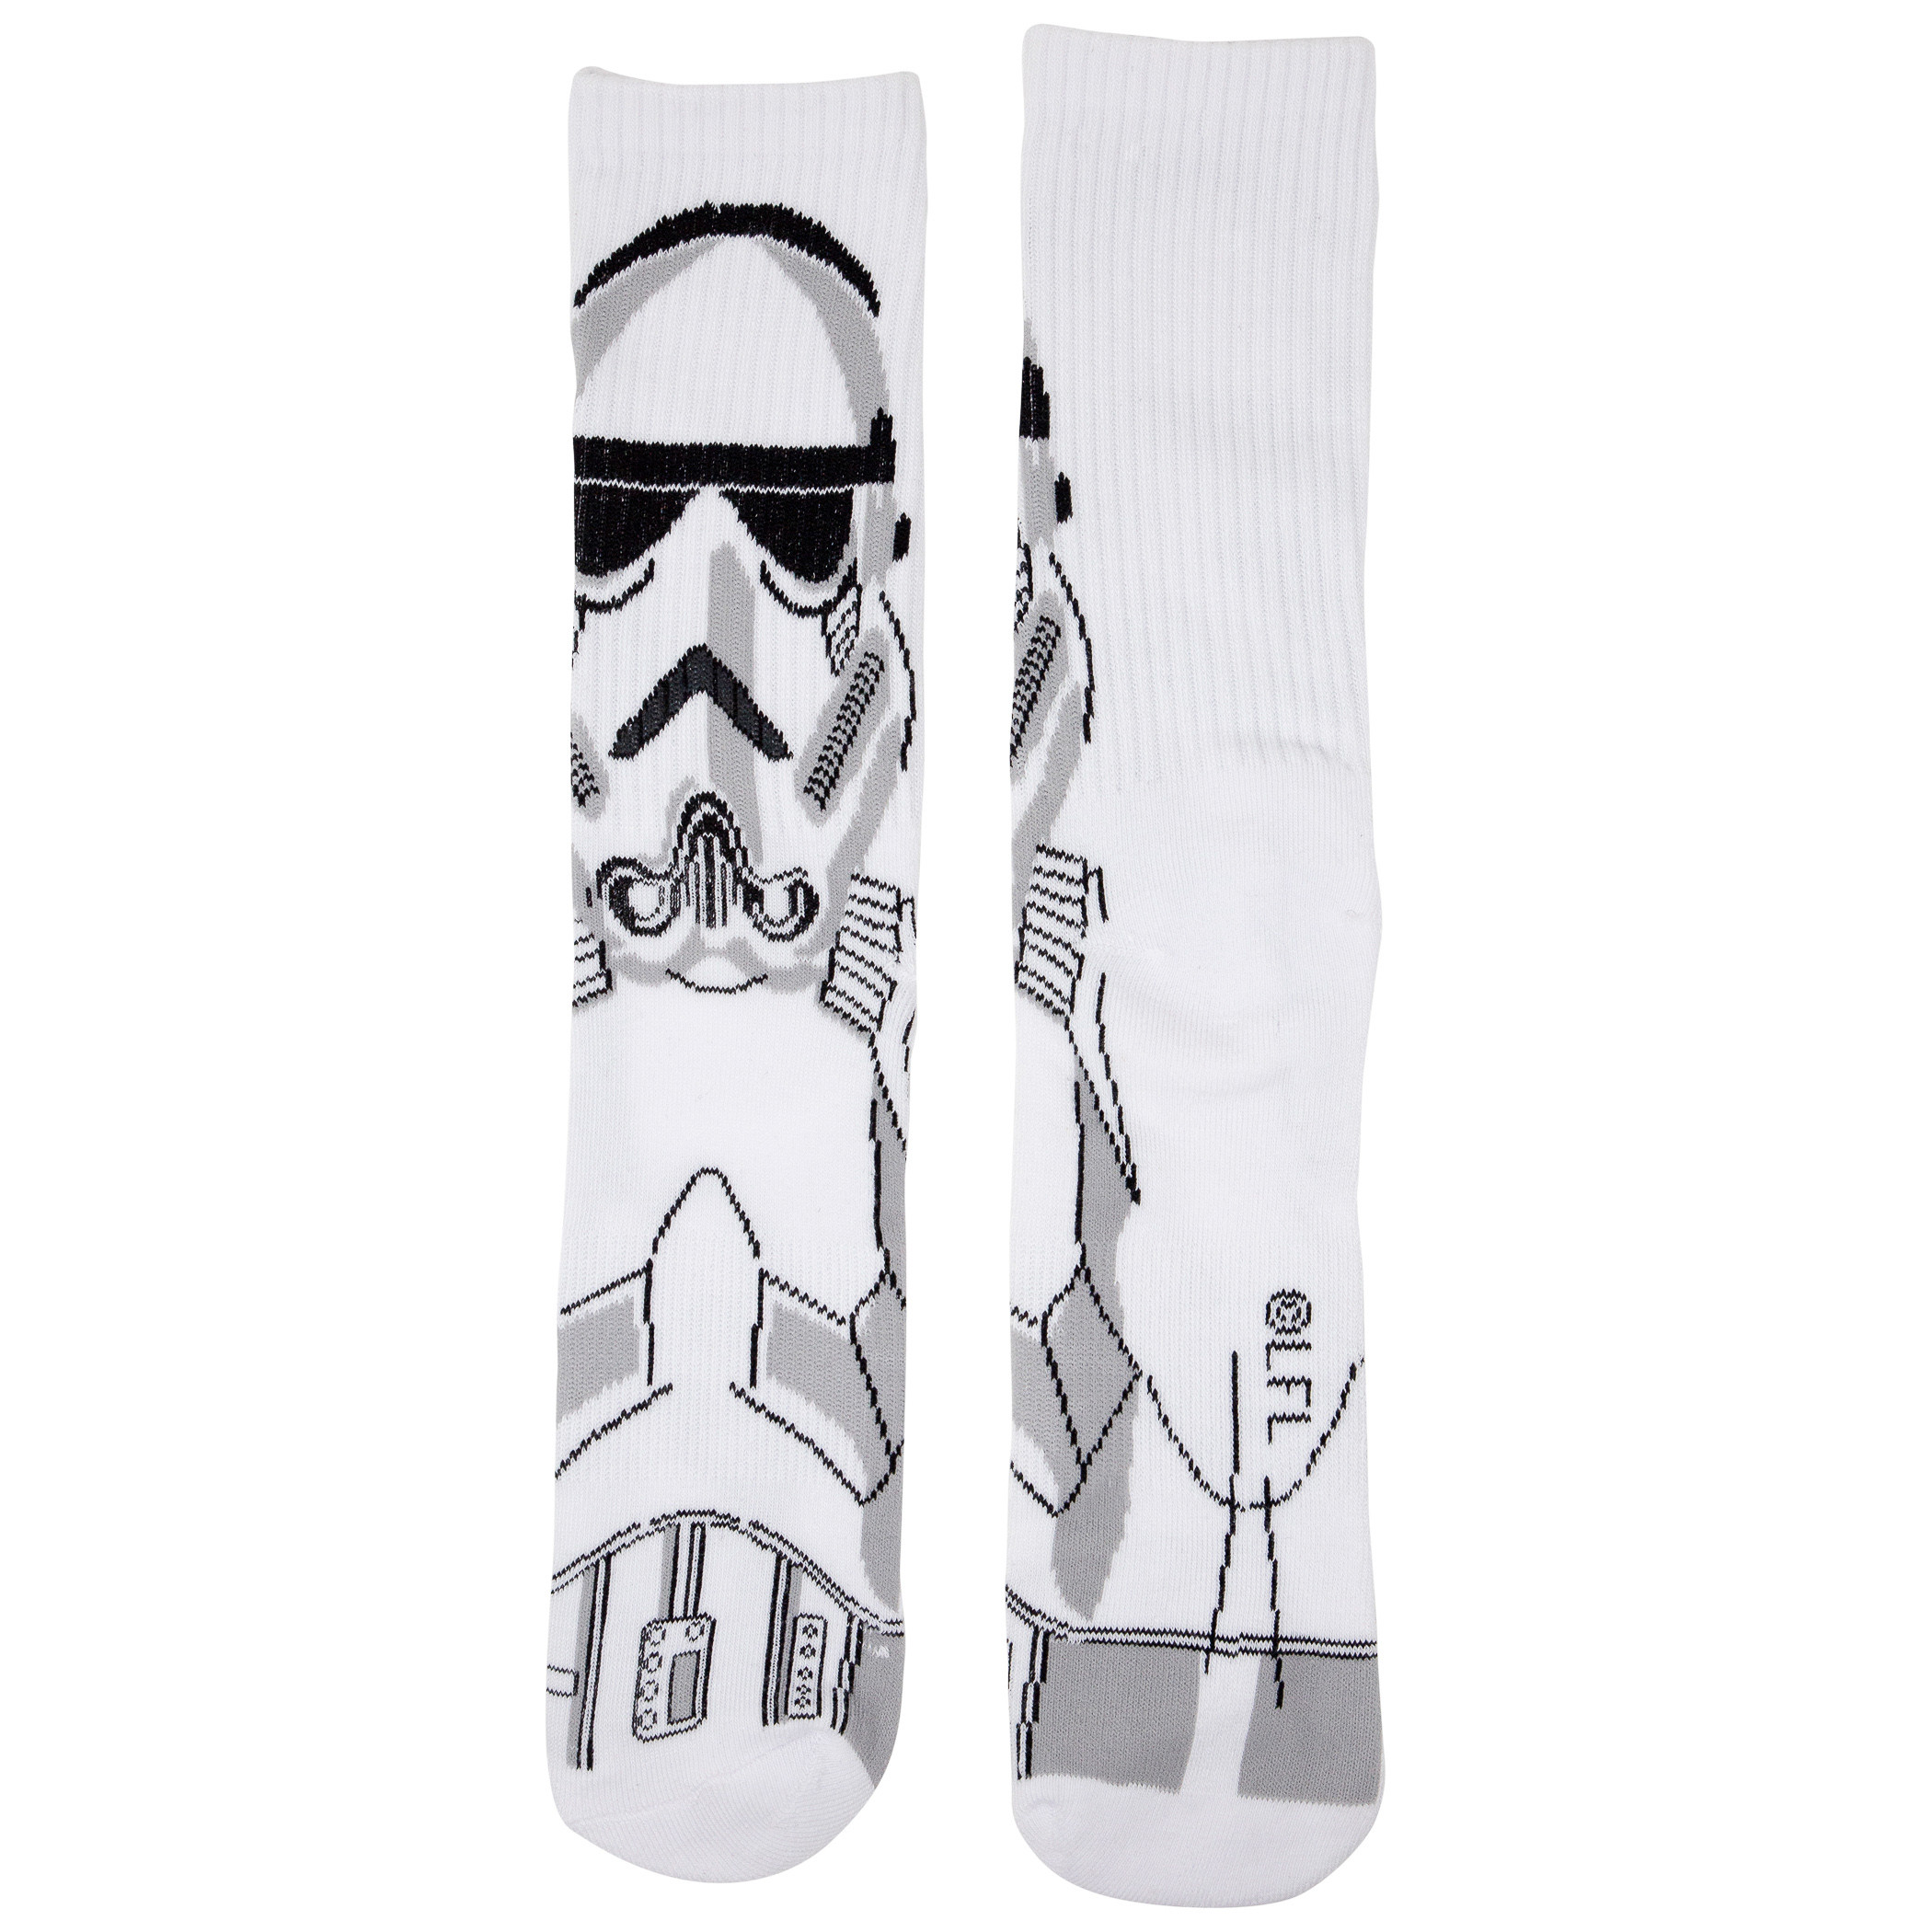 Star Wars Character Sayings Crew Socks 5 Pair Pack 